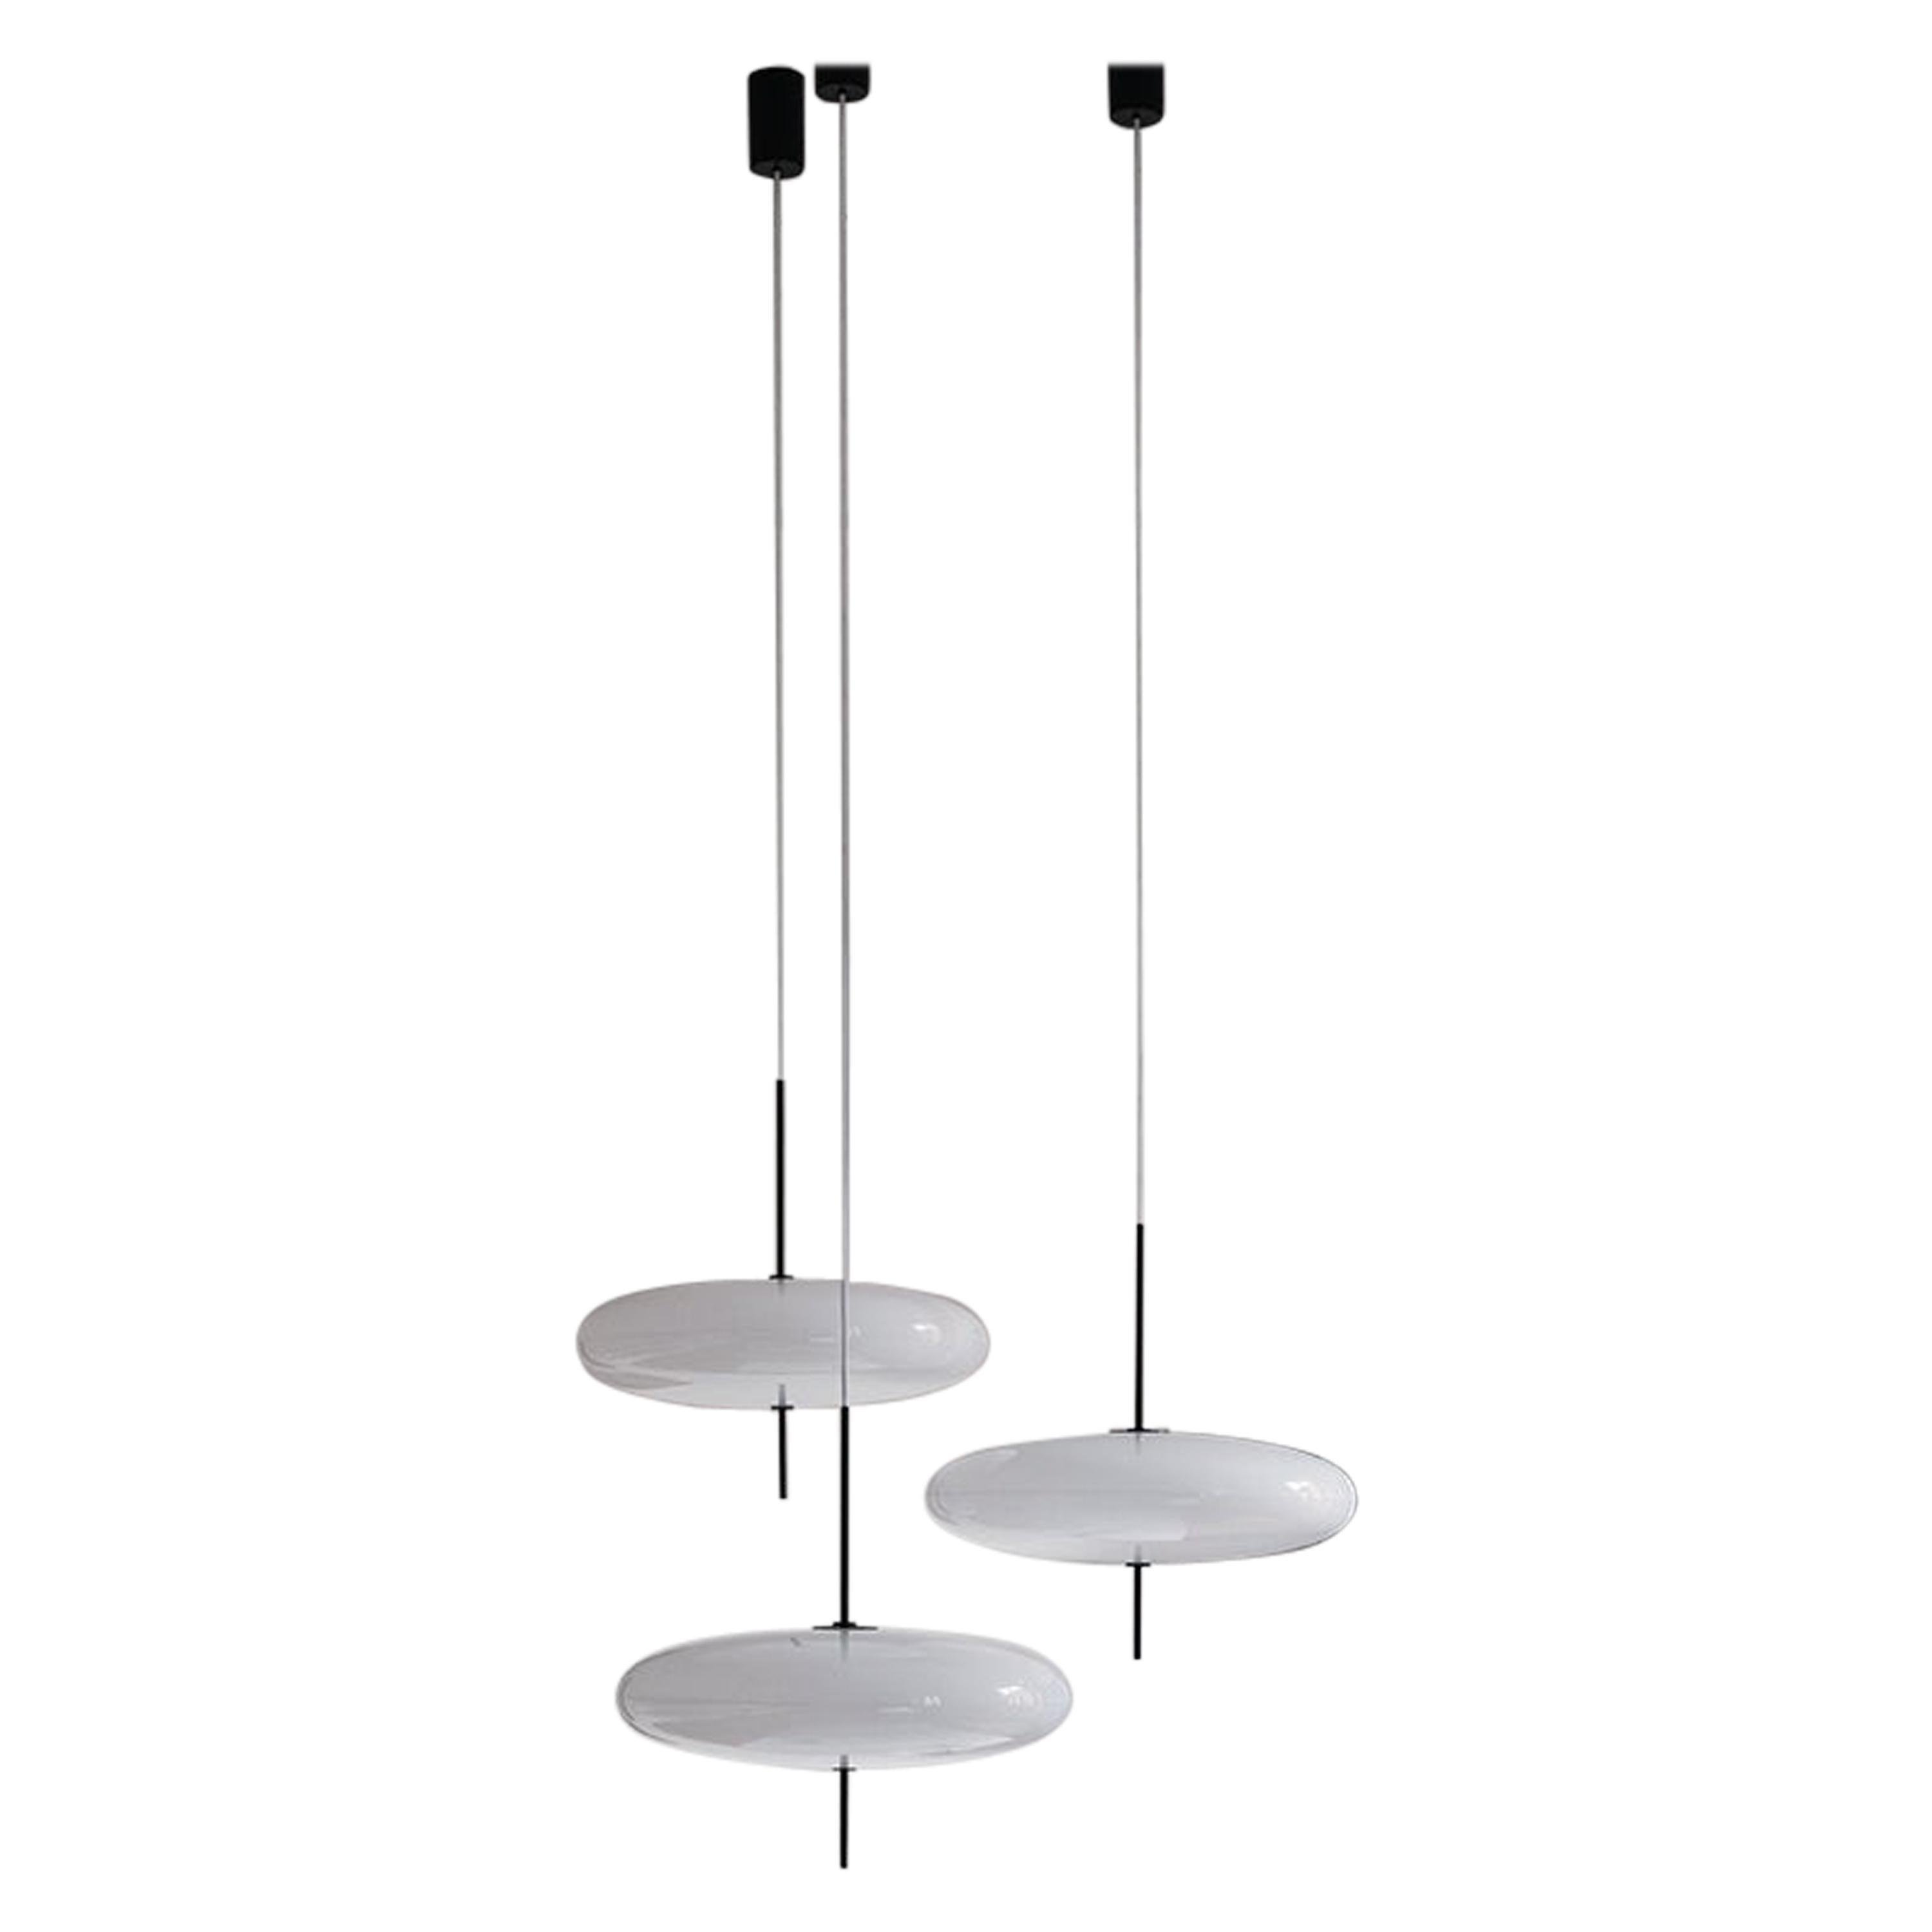 Set 3 Gino Sarfatti Lamp Model 2065 White Diffuser, Black Hardware, White Cable For Sale